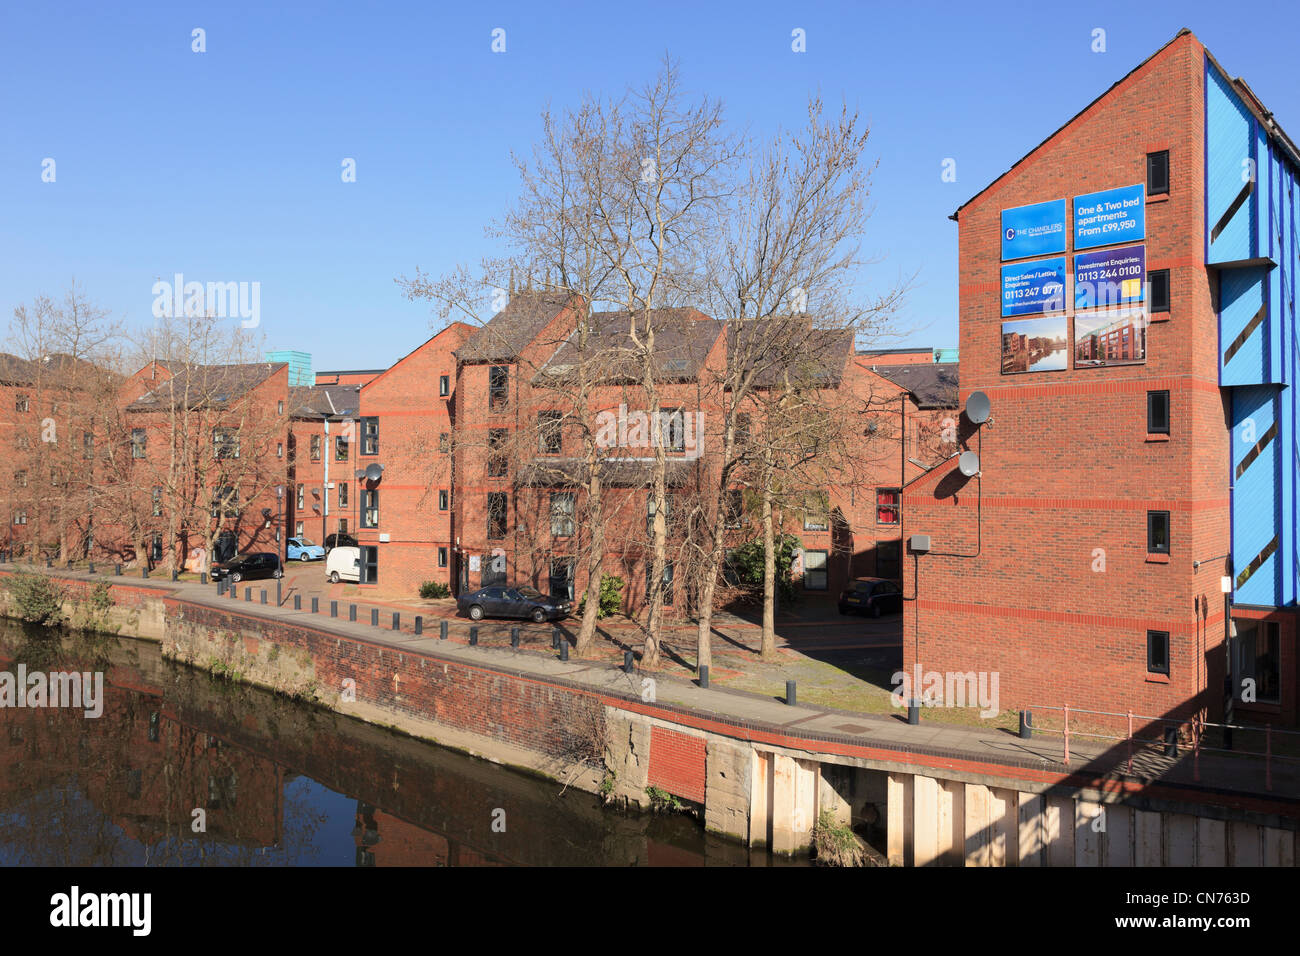 Nuovo lungomare appartamenti pubblicizzati in vendita su risviluppata wharf accanto al fiume Aire in Leeds West Yorkshire England Regno Unito Foto Stock